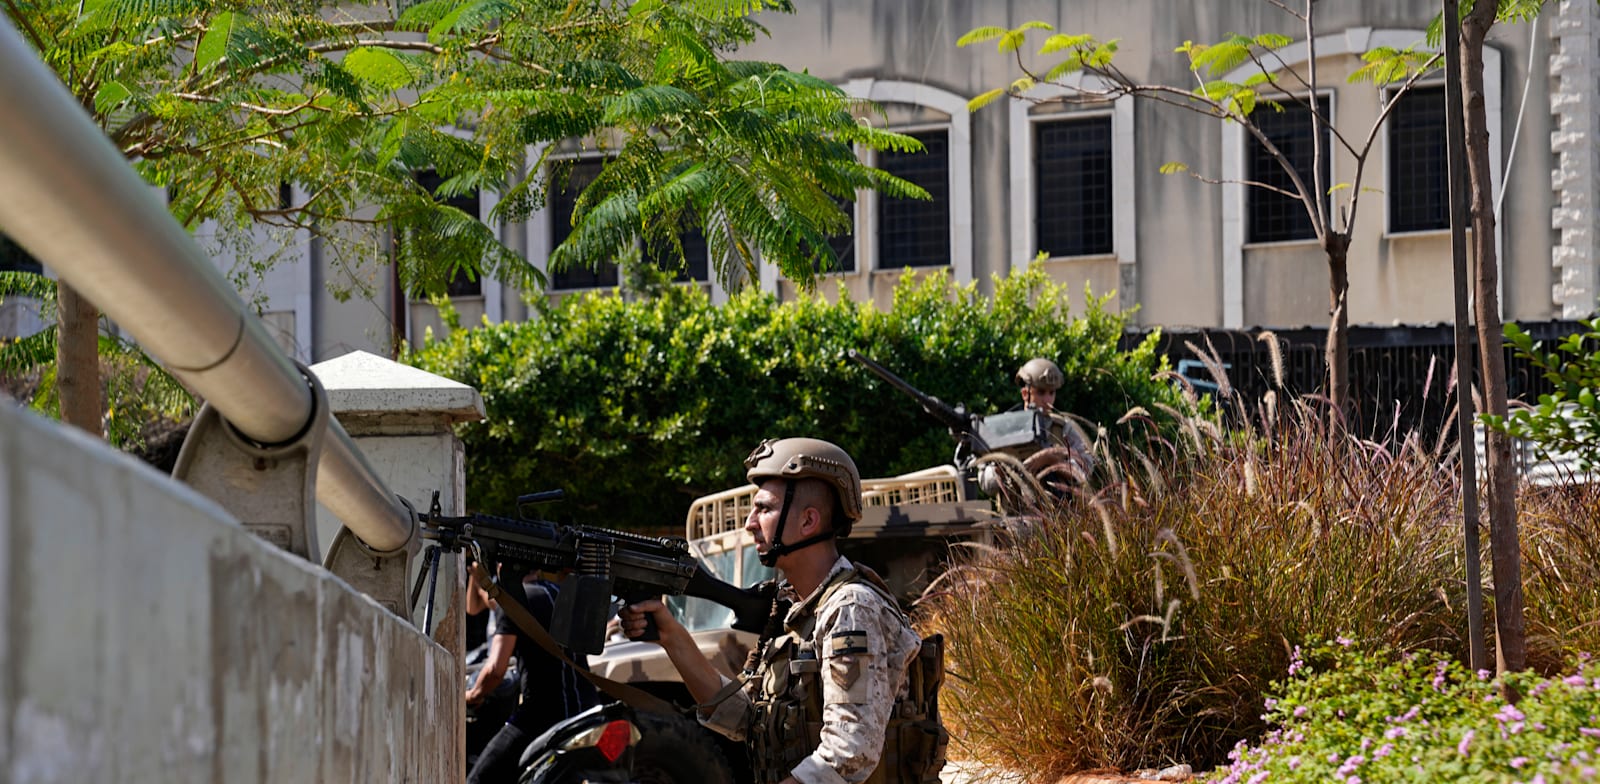 כוחות צבא לבנון במוקד העימותים בביירות, מוקדם יותר היום / צילום: Associated Press, Hassan Ammar